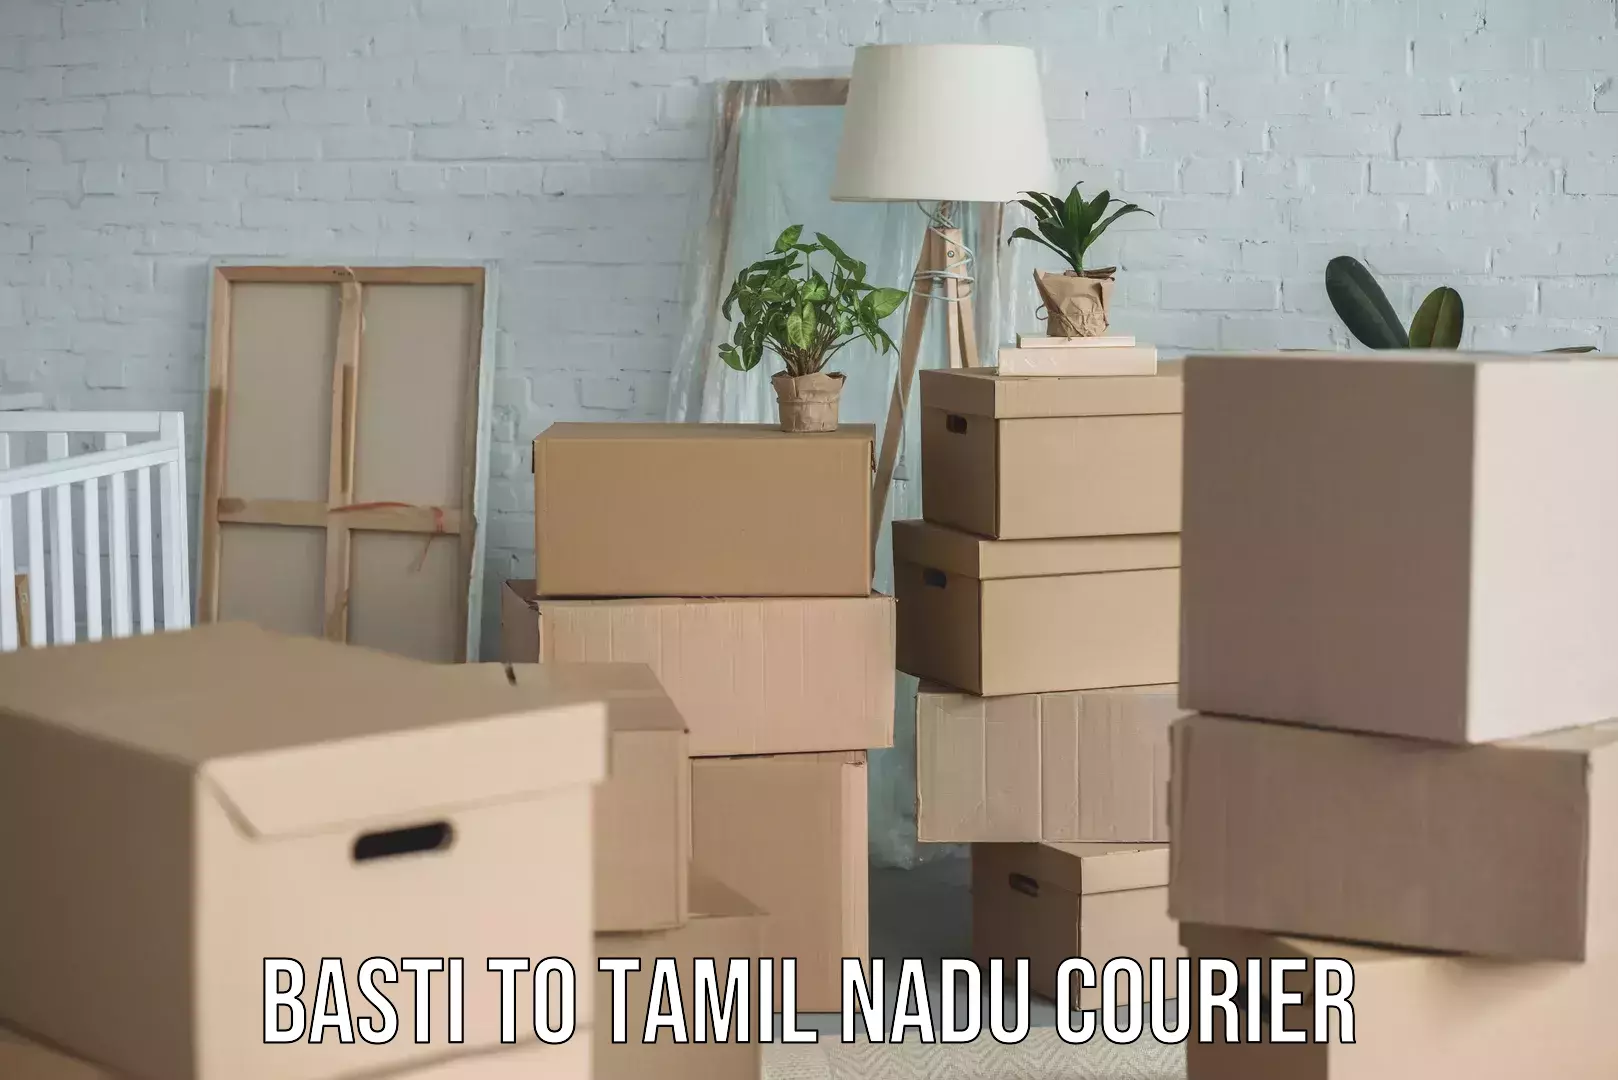 E-commerce fulfillment Basti to Tamil Nadu